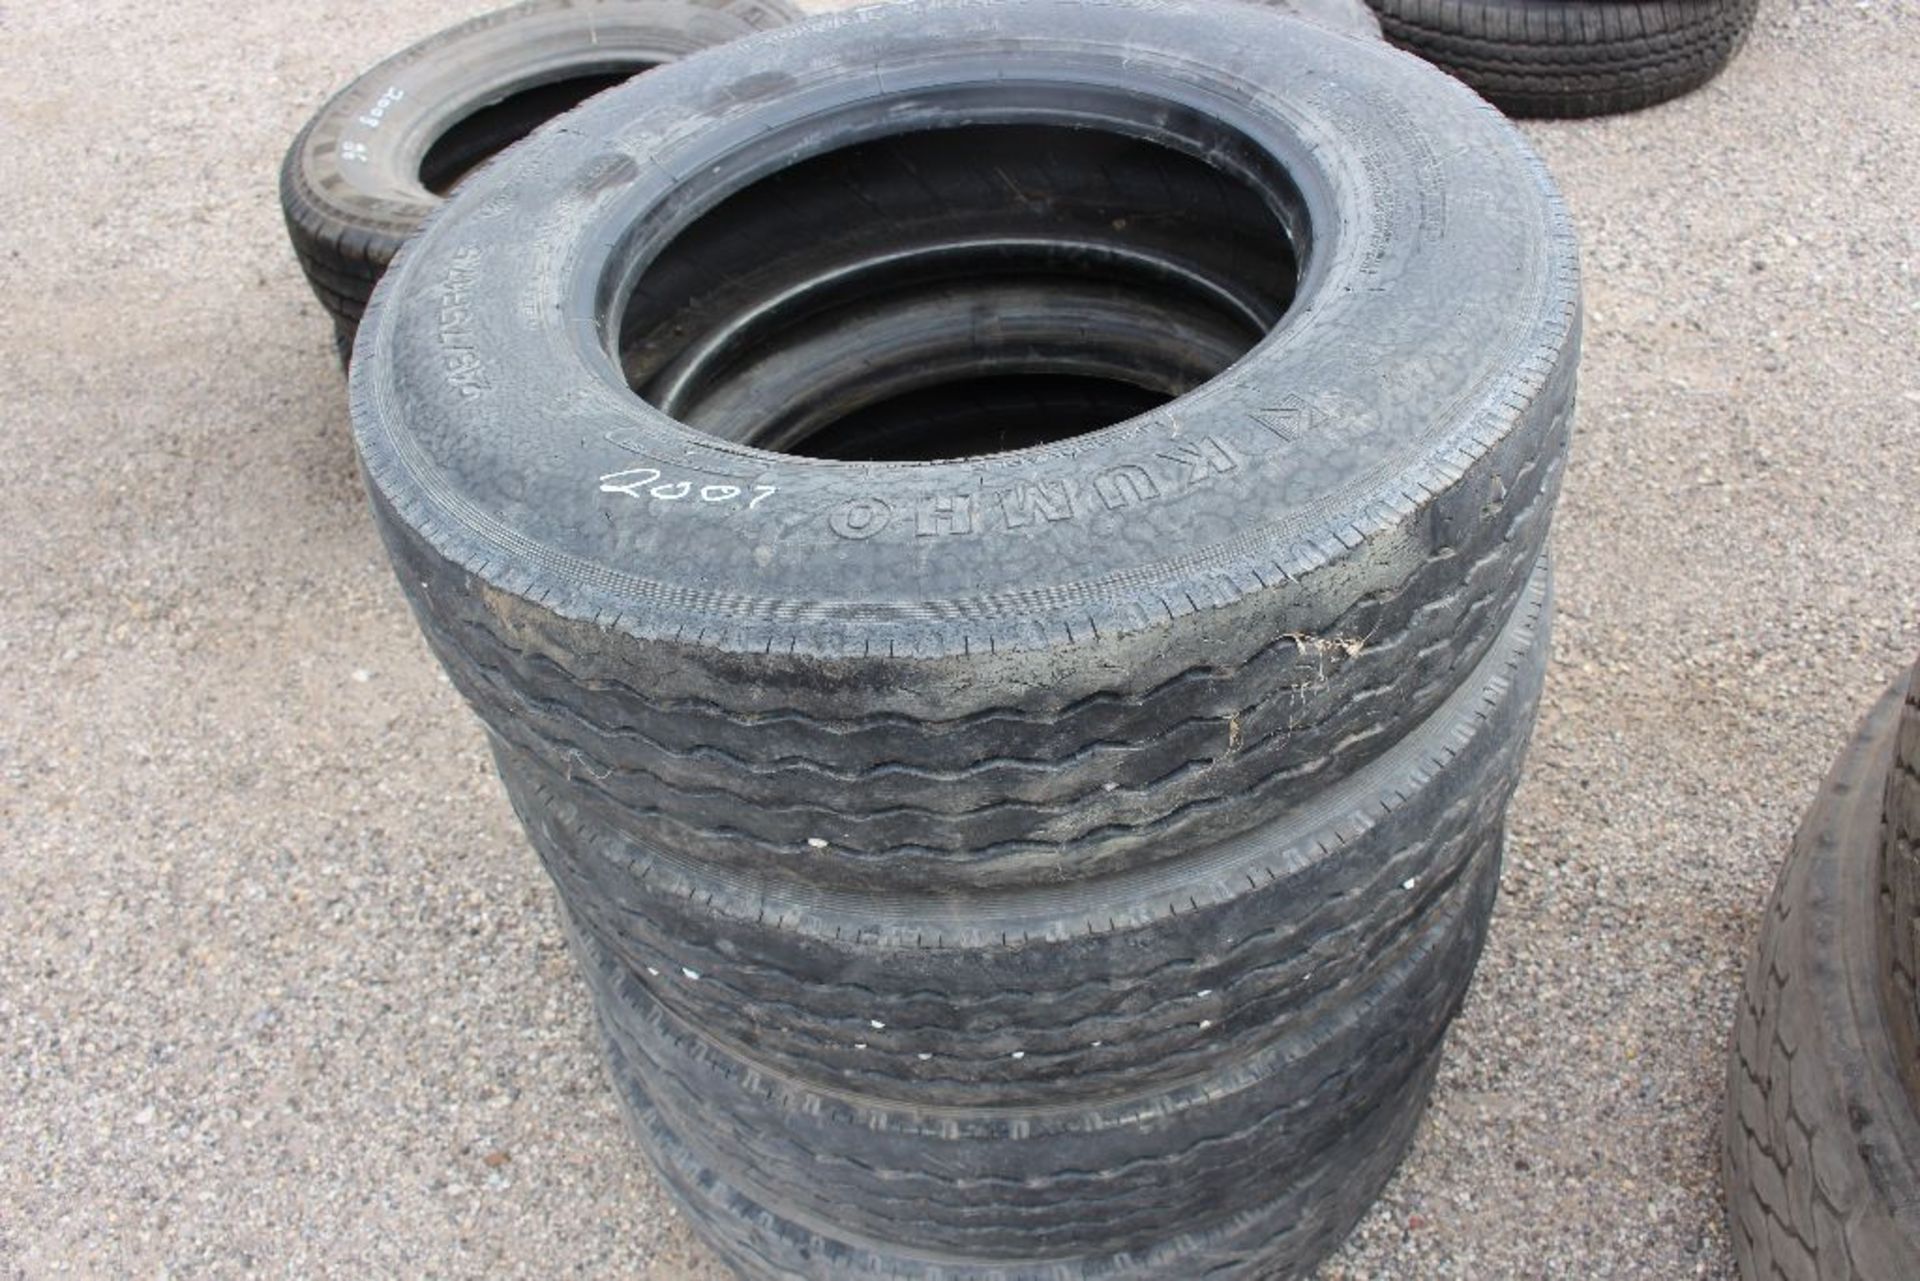 (4) Kumho tires, 215/75R, 17.5.